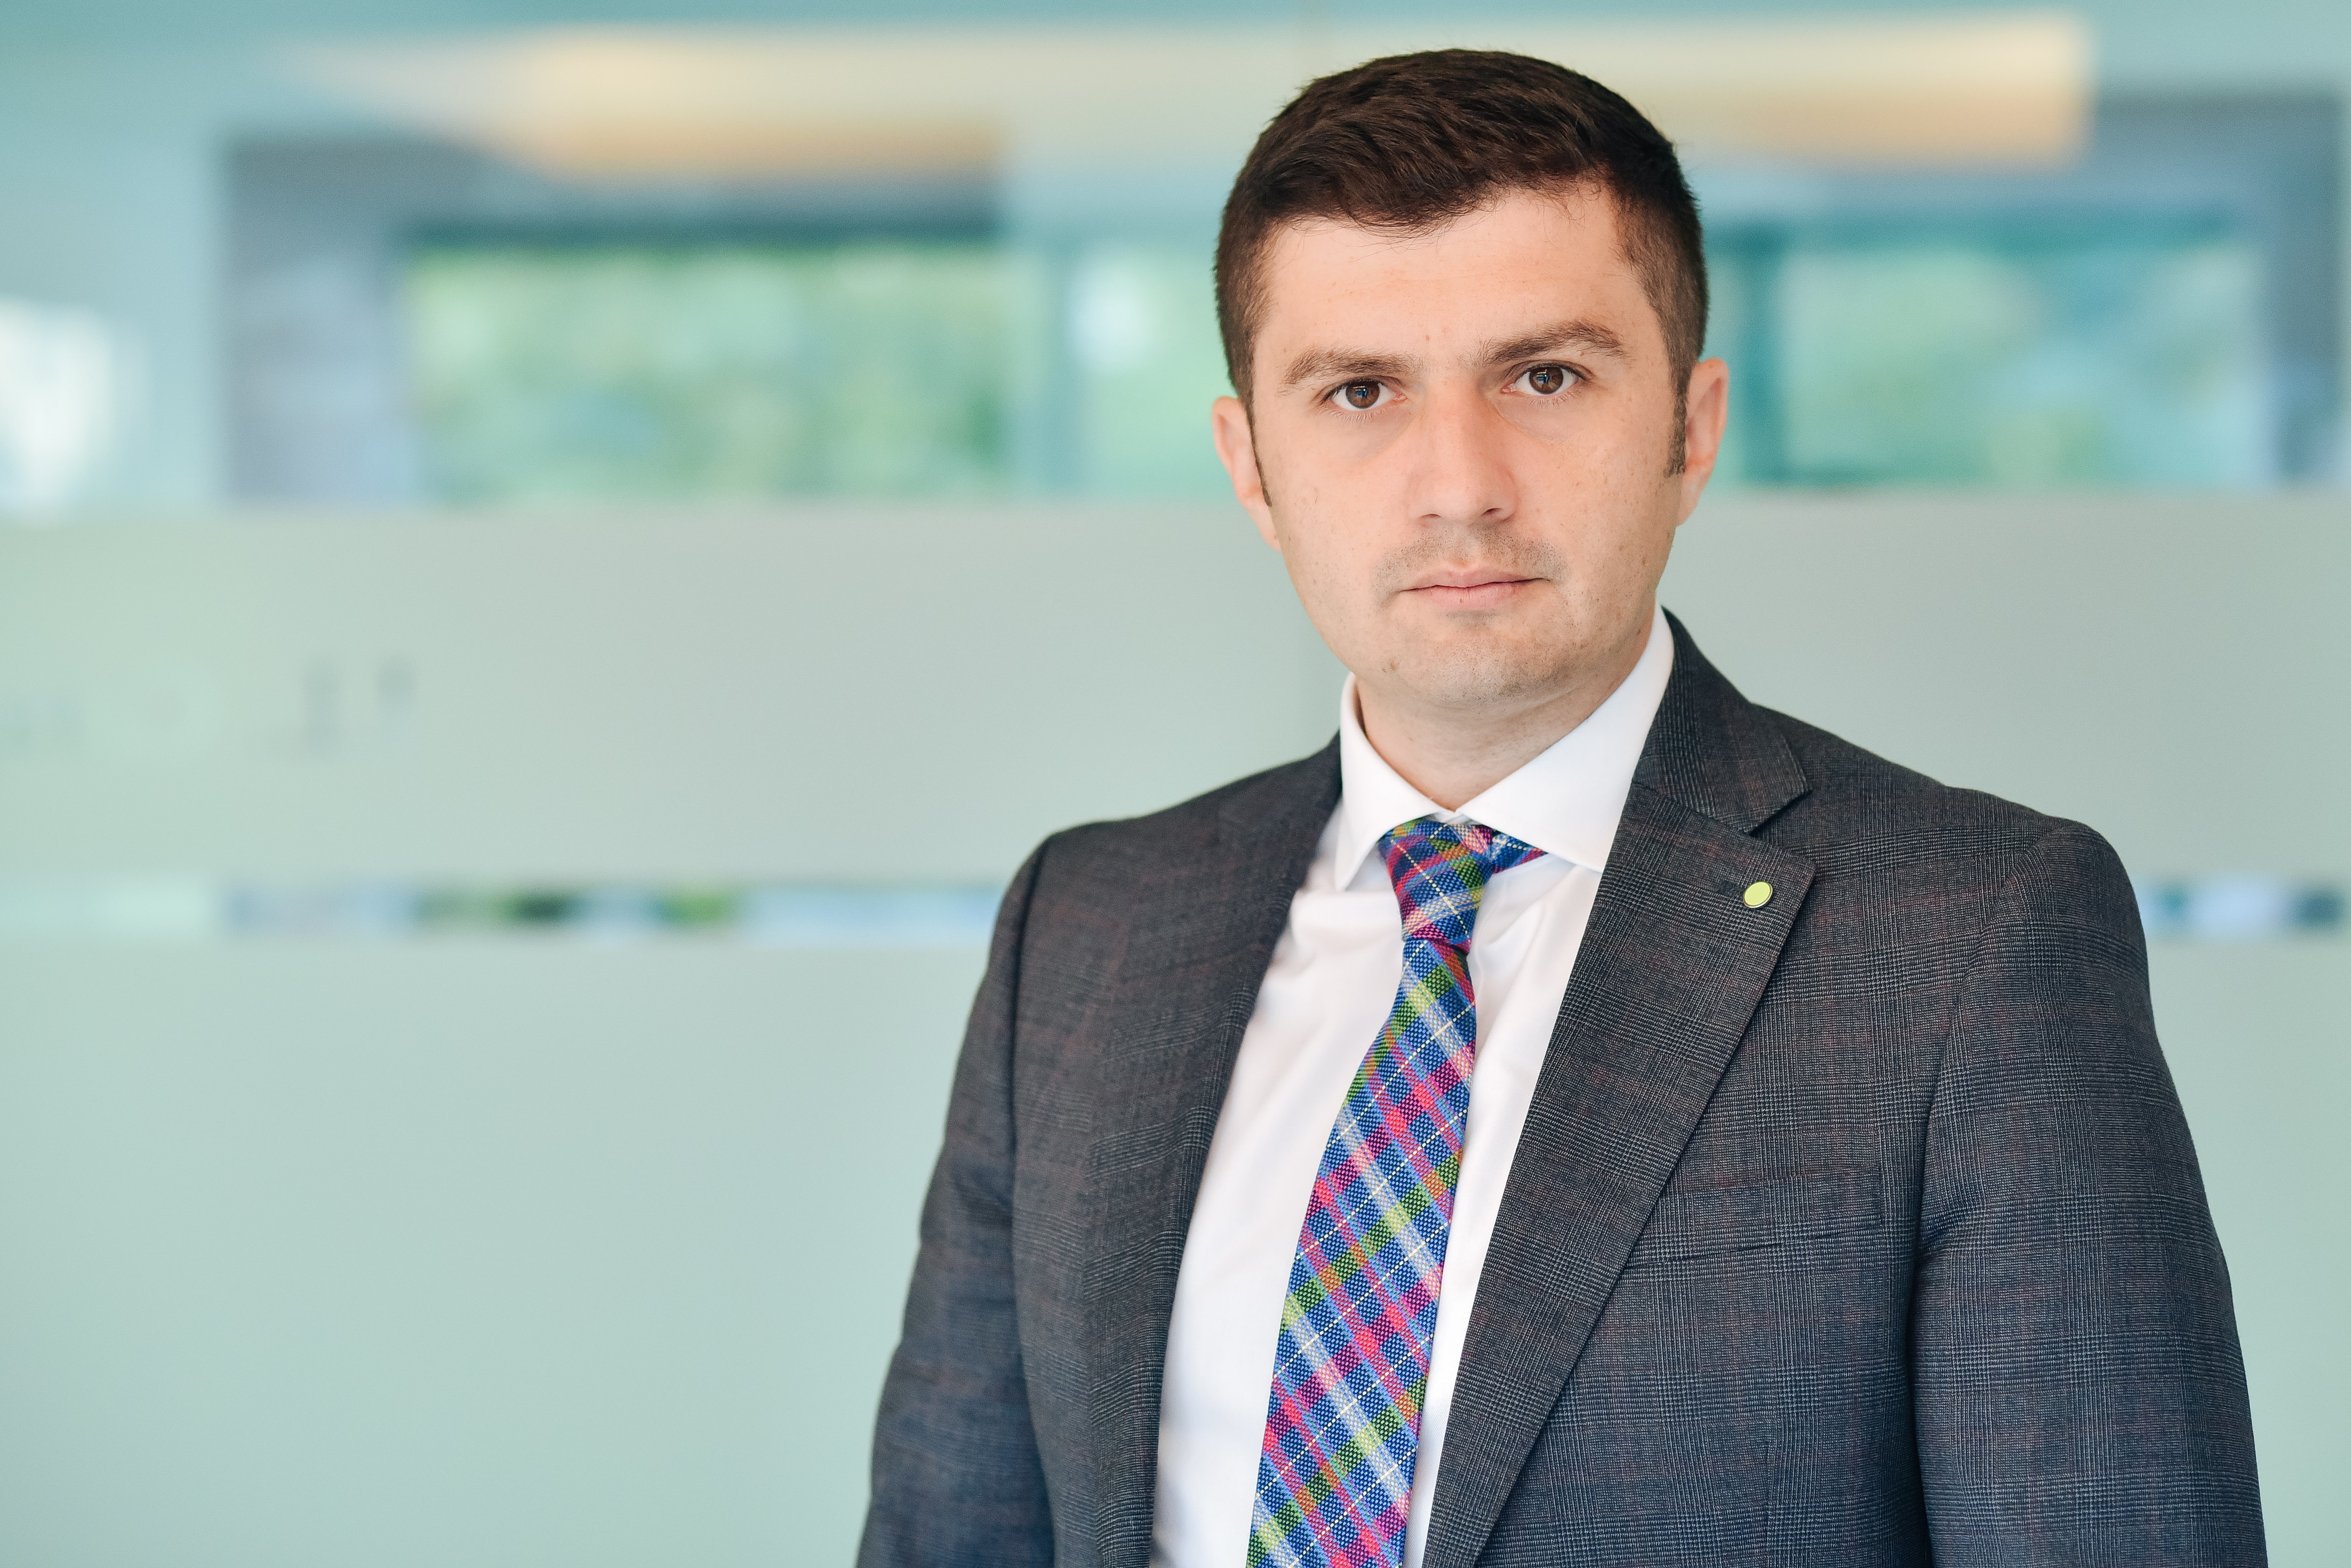 Deloitte România l-a numit în funcția de partener fiscal pe Alin Situ, un profesionist cu aproape 20 de ani de experiență în sectorul financiar.